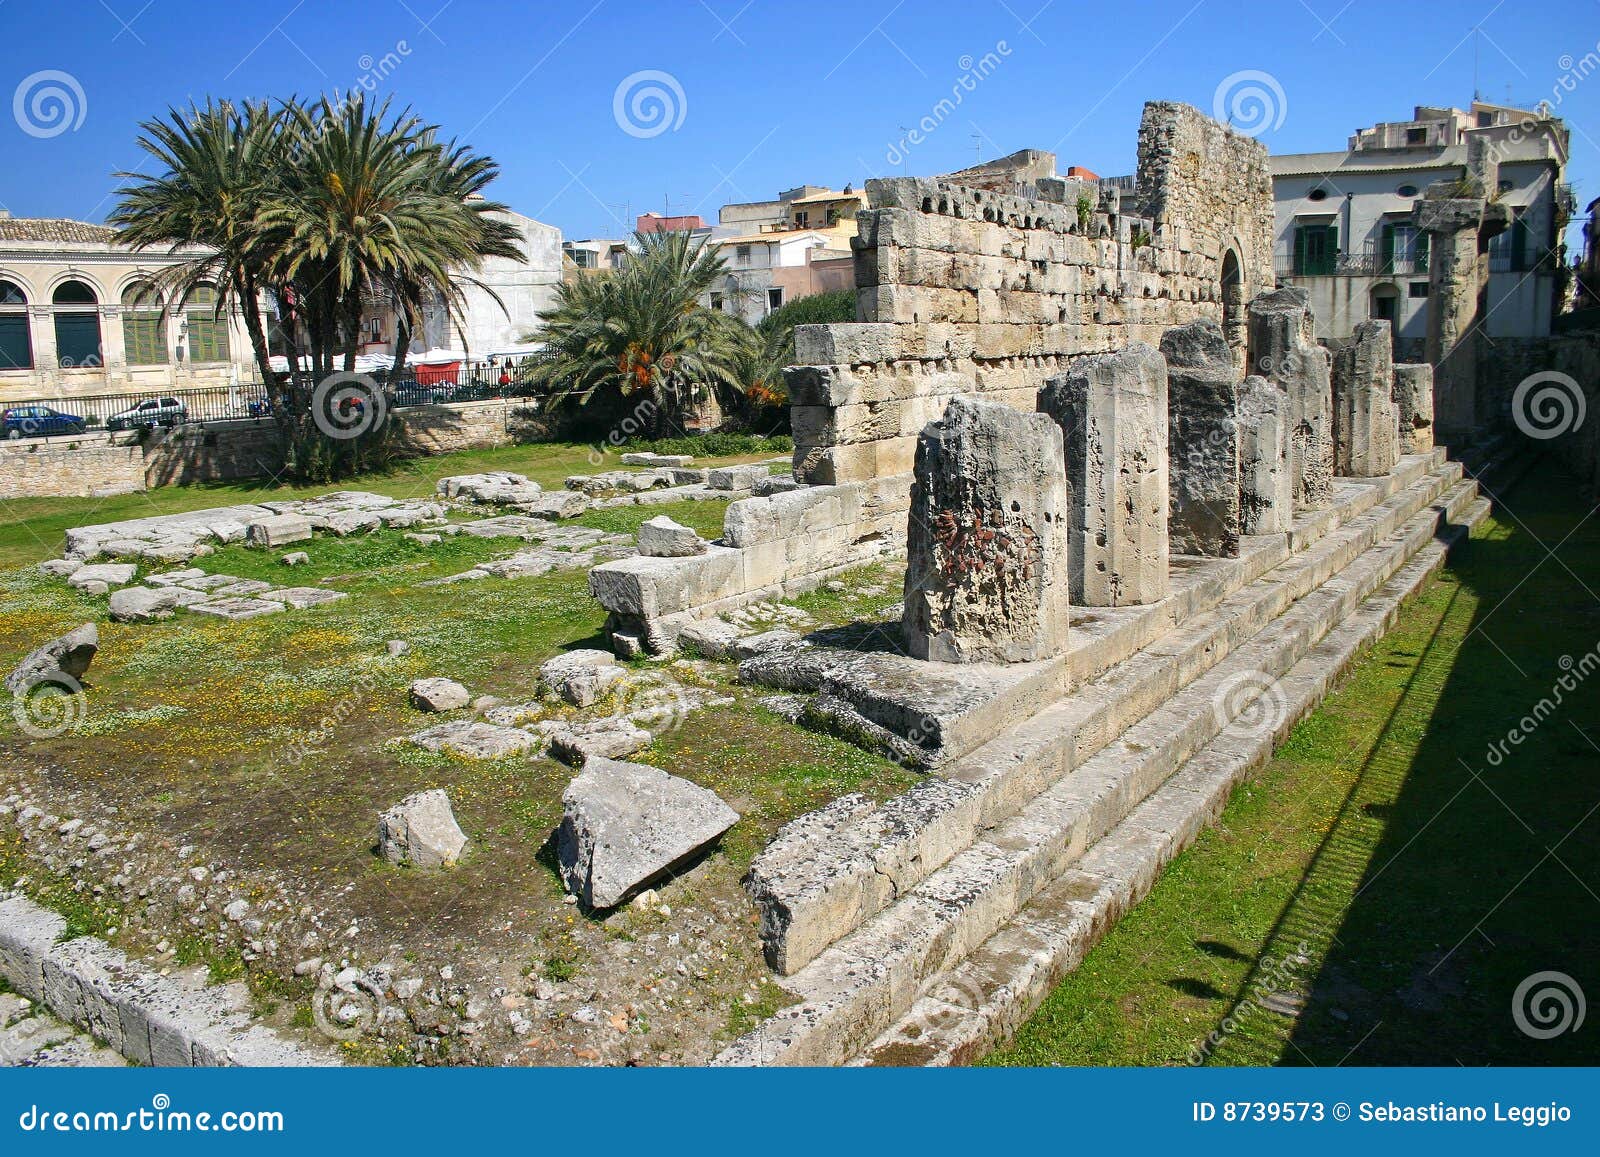 apollo temple in siracusa - sicily